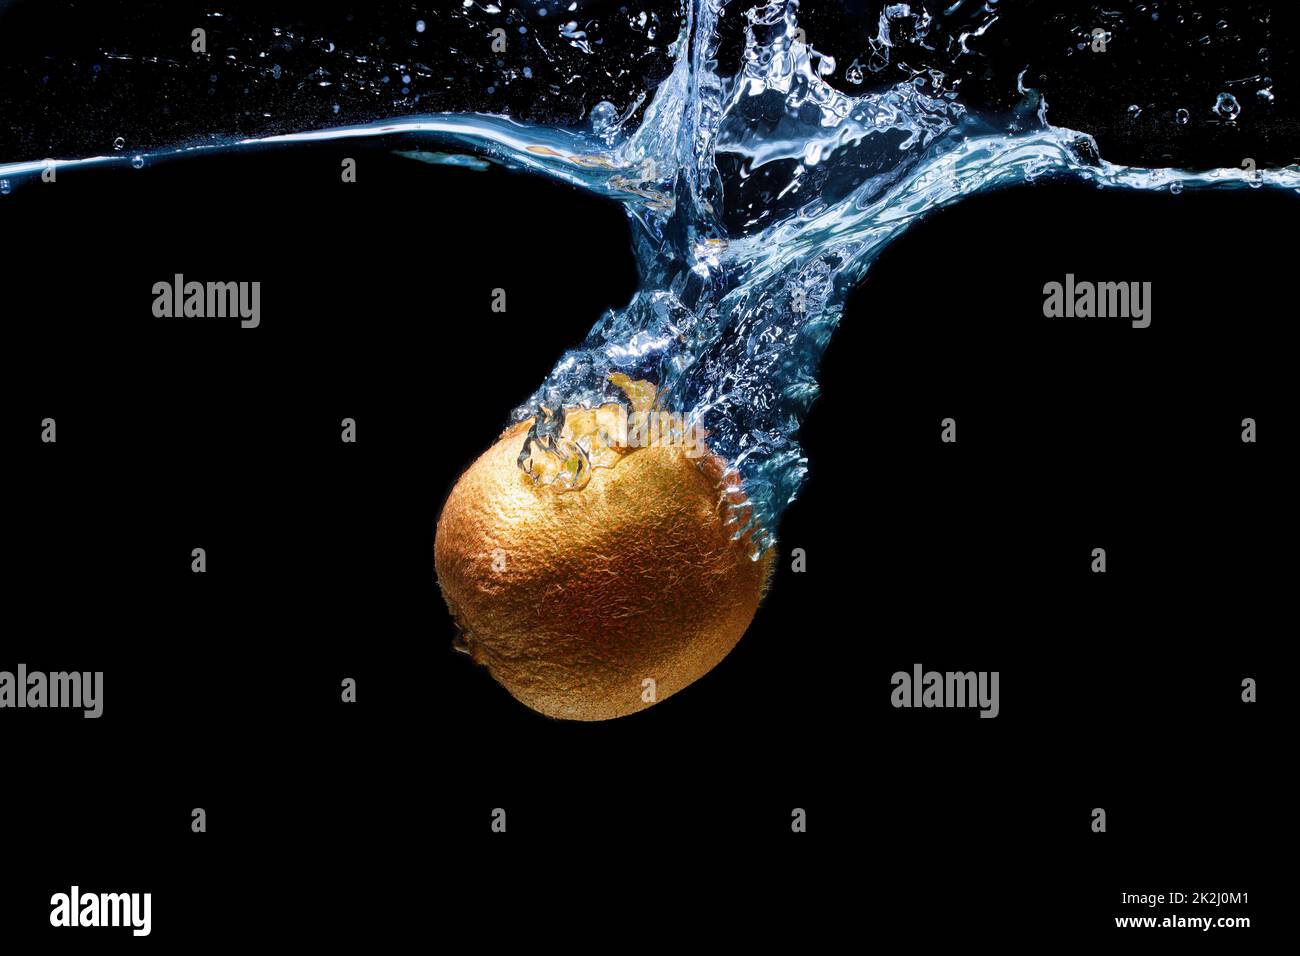 Whole kiwifruit dropped in water with splashes isolated on black background Stock Photo